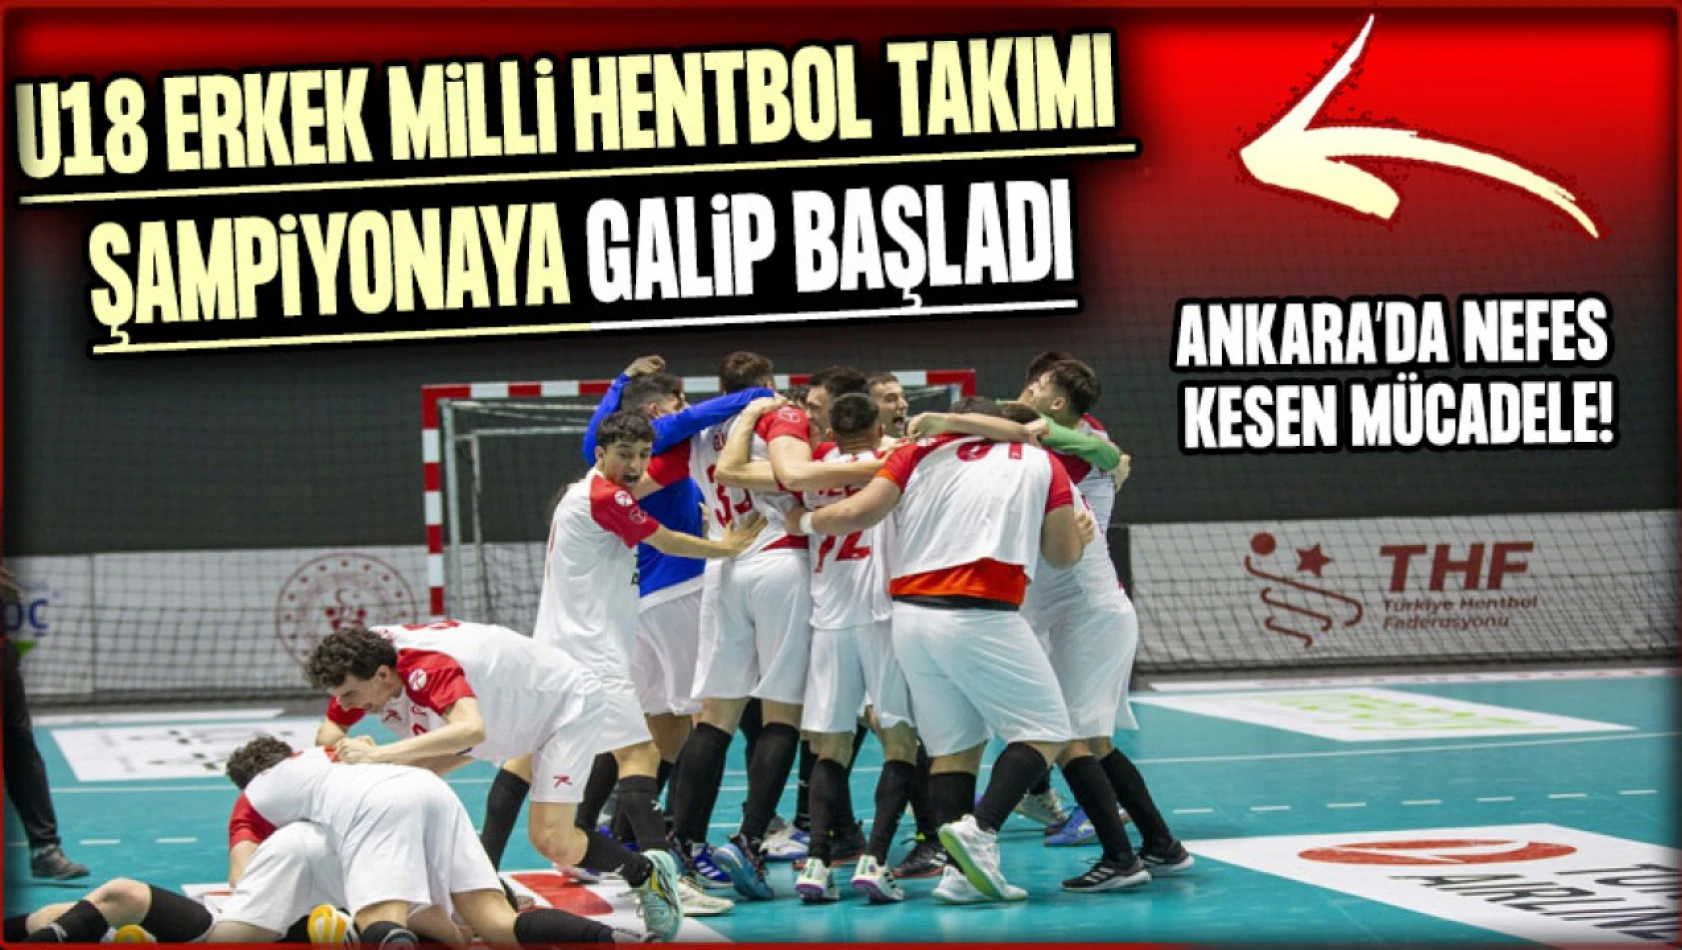 U18 Erkek Milli Hentbol Takımı şampiyonaya galip başladı: Ankara'da nefes kesen mücadele!